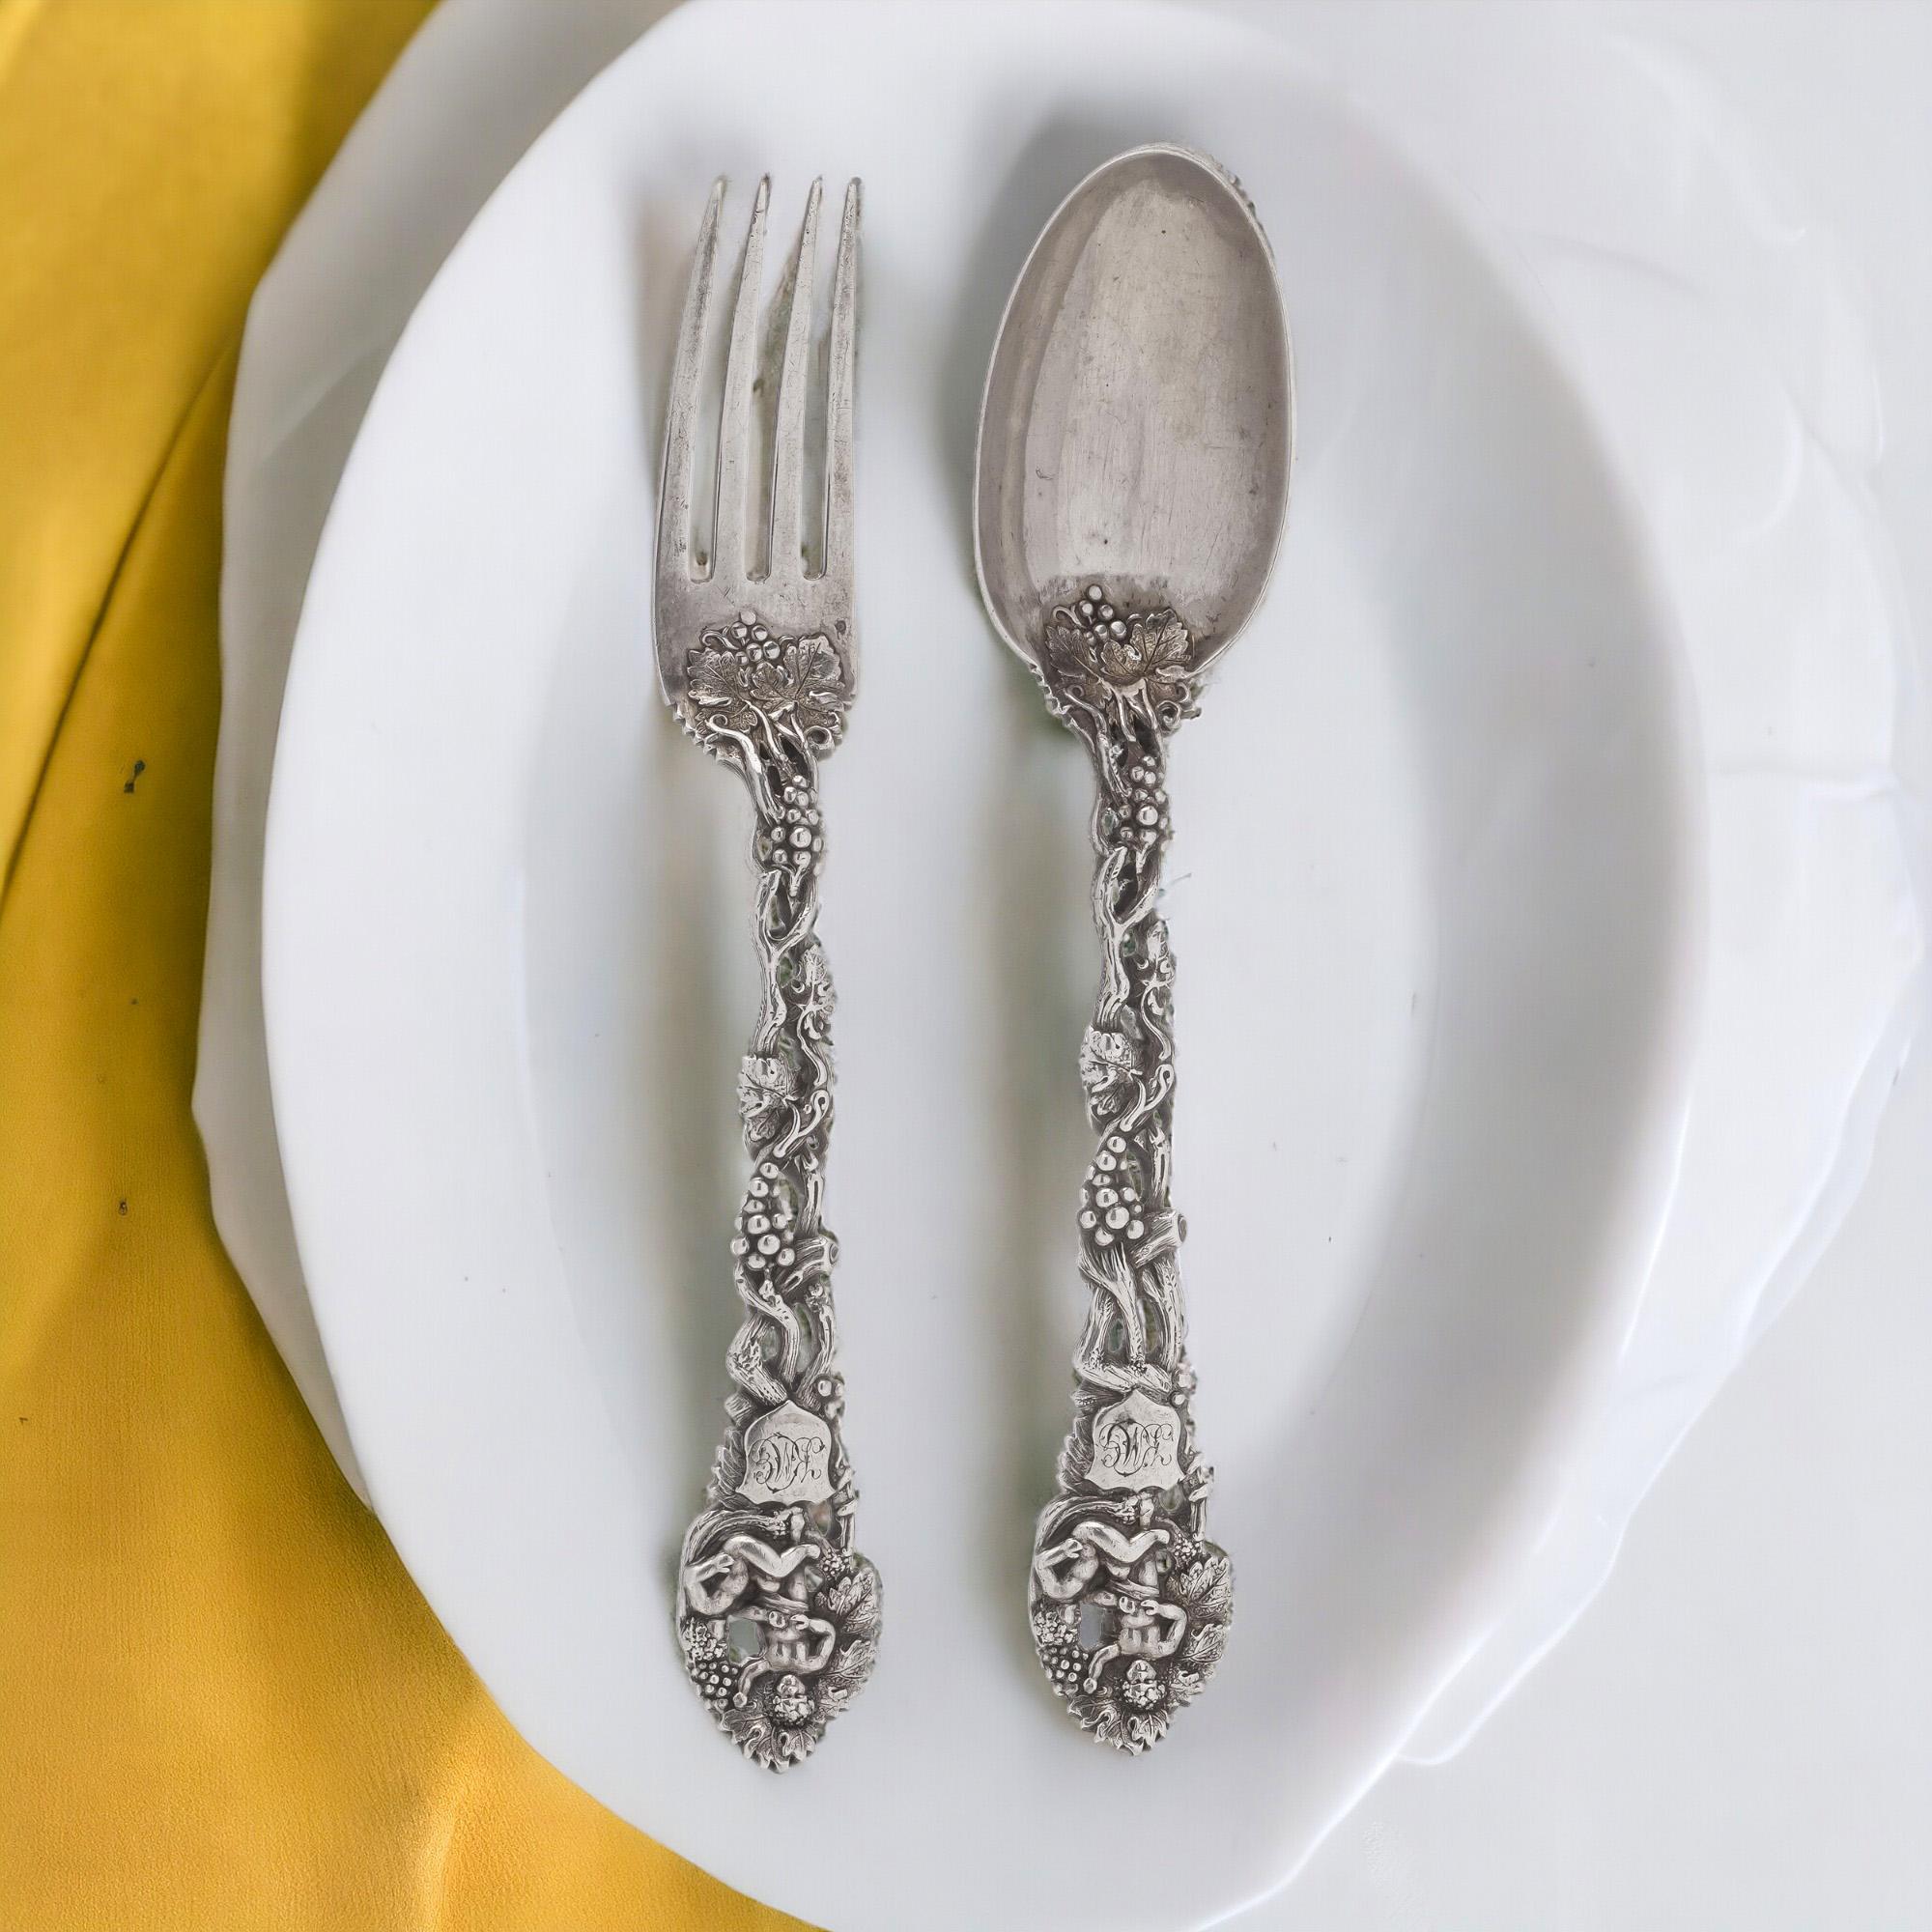 Antique Victorian Sterling silver 925 fruit salad cutlery set of fork and spoon by Chawner & Co (George William Adams). Le service est joliment décoré de deux putti et de feuilles de vigne. Le service de couverts porte un monogramme.  Fabriqué en